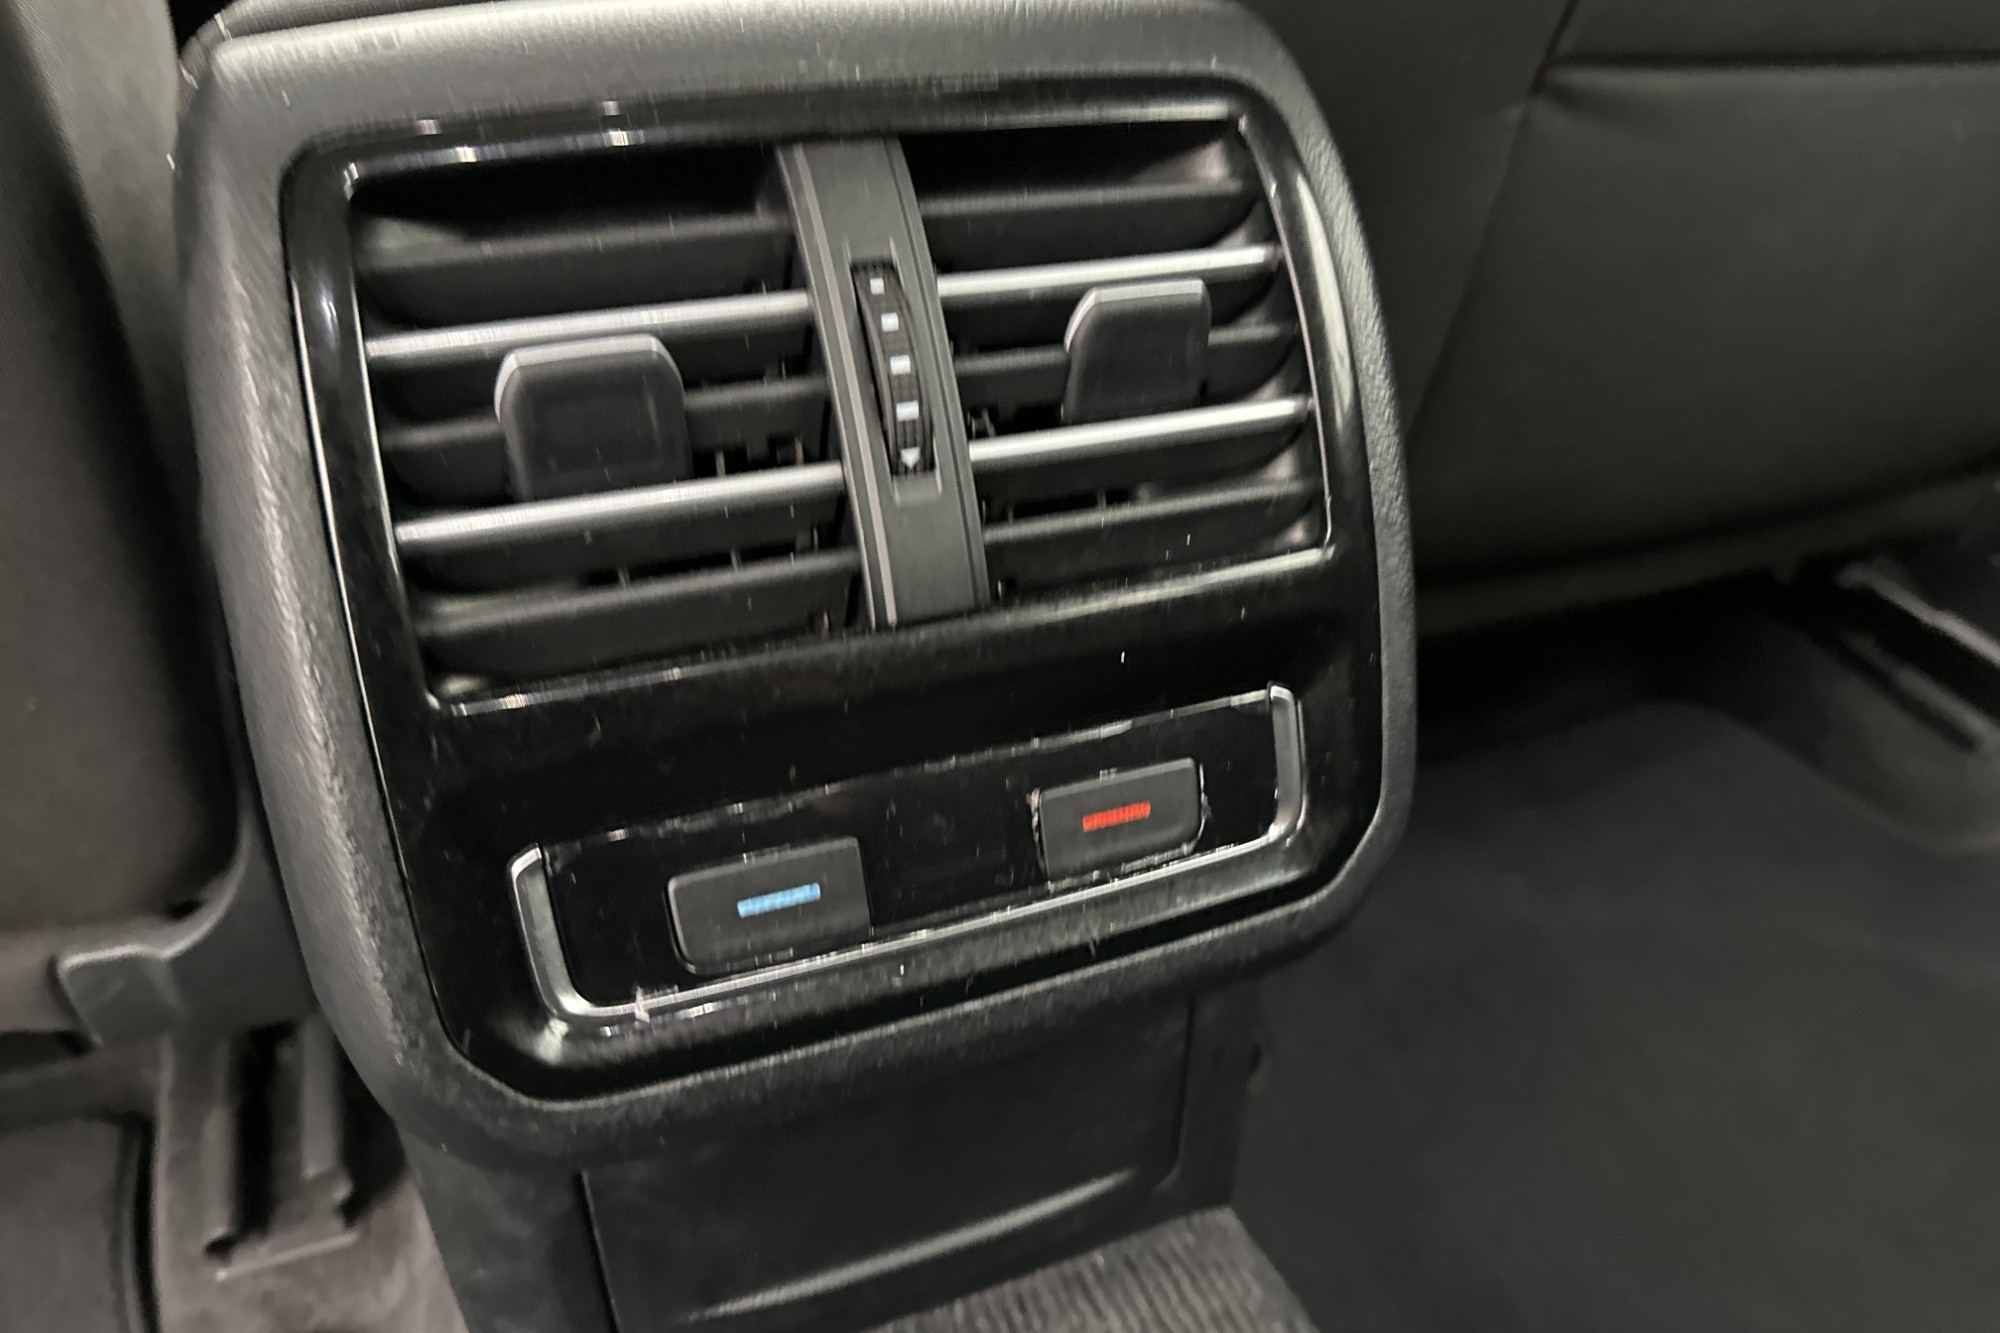 Volkswagen Passat SC TDI 150hk Värmare Kamera CarPlay Drag